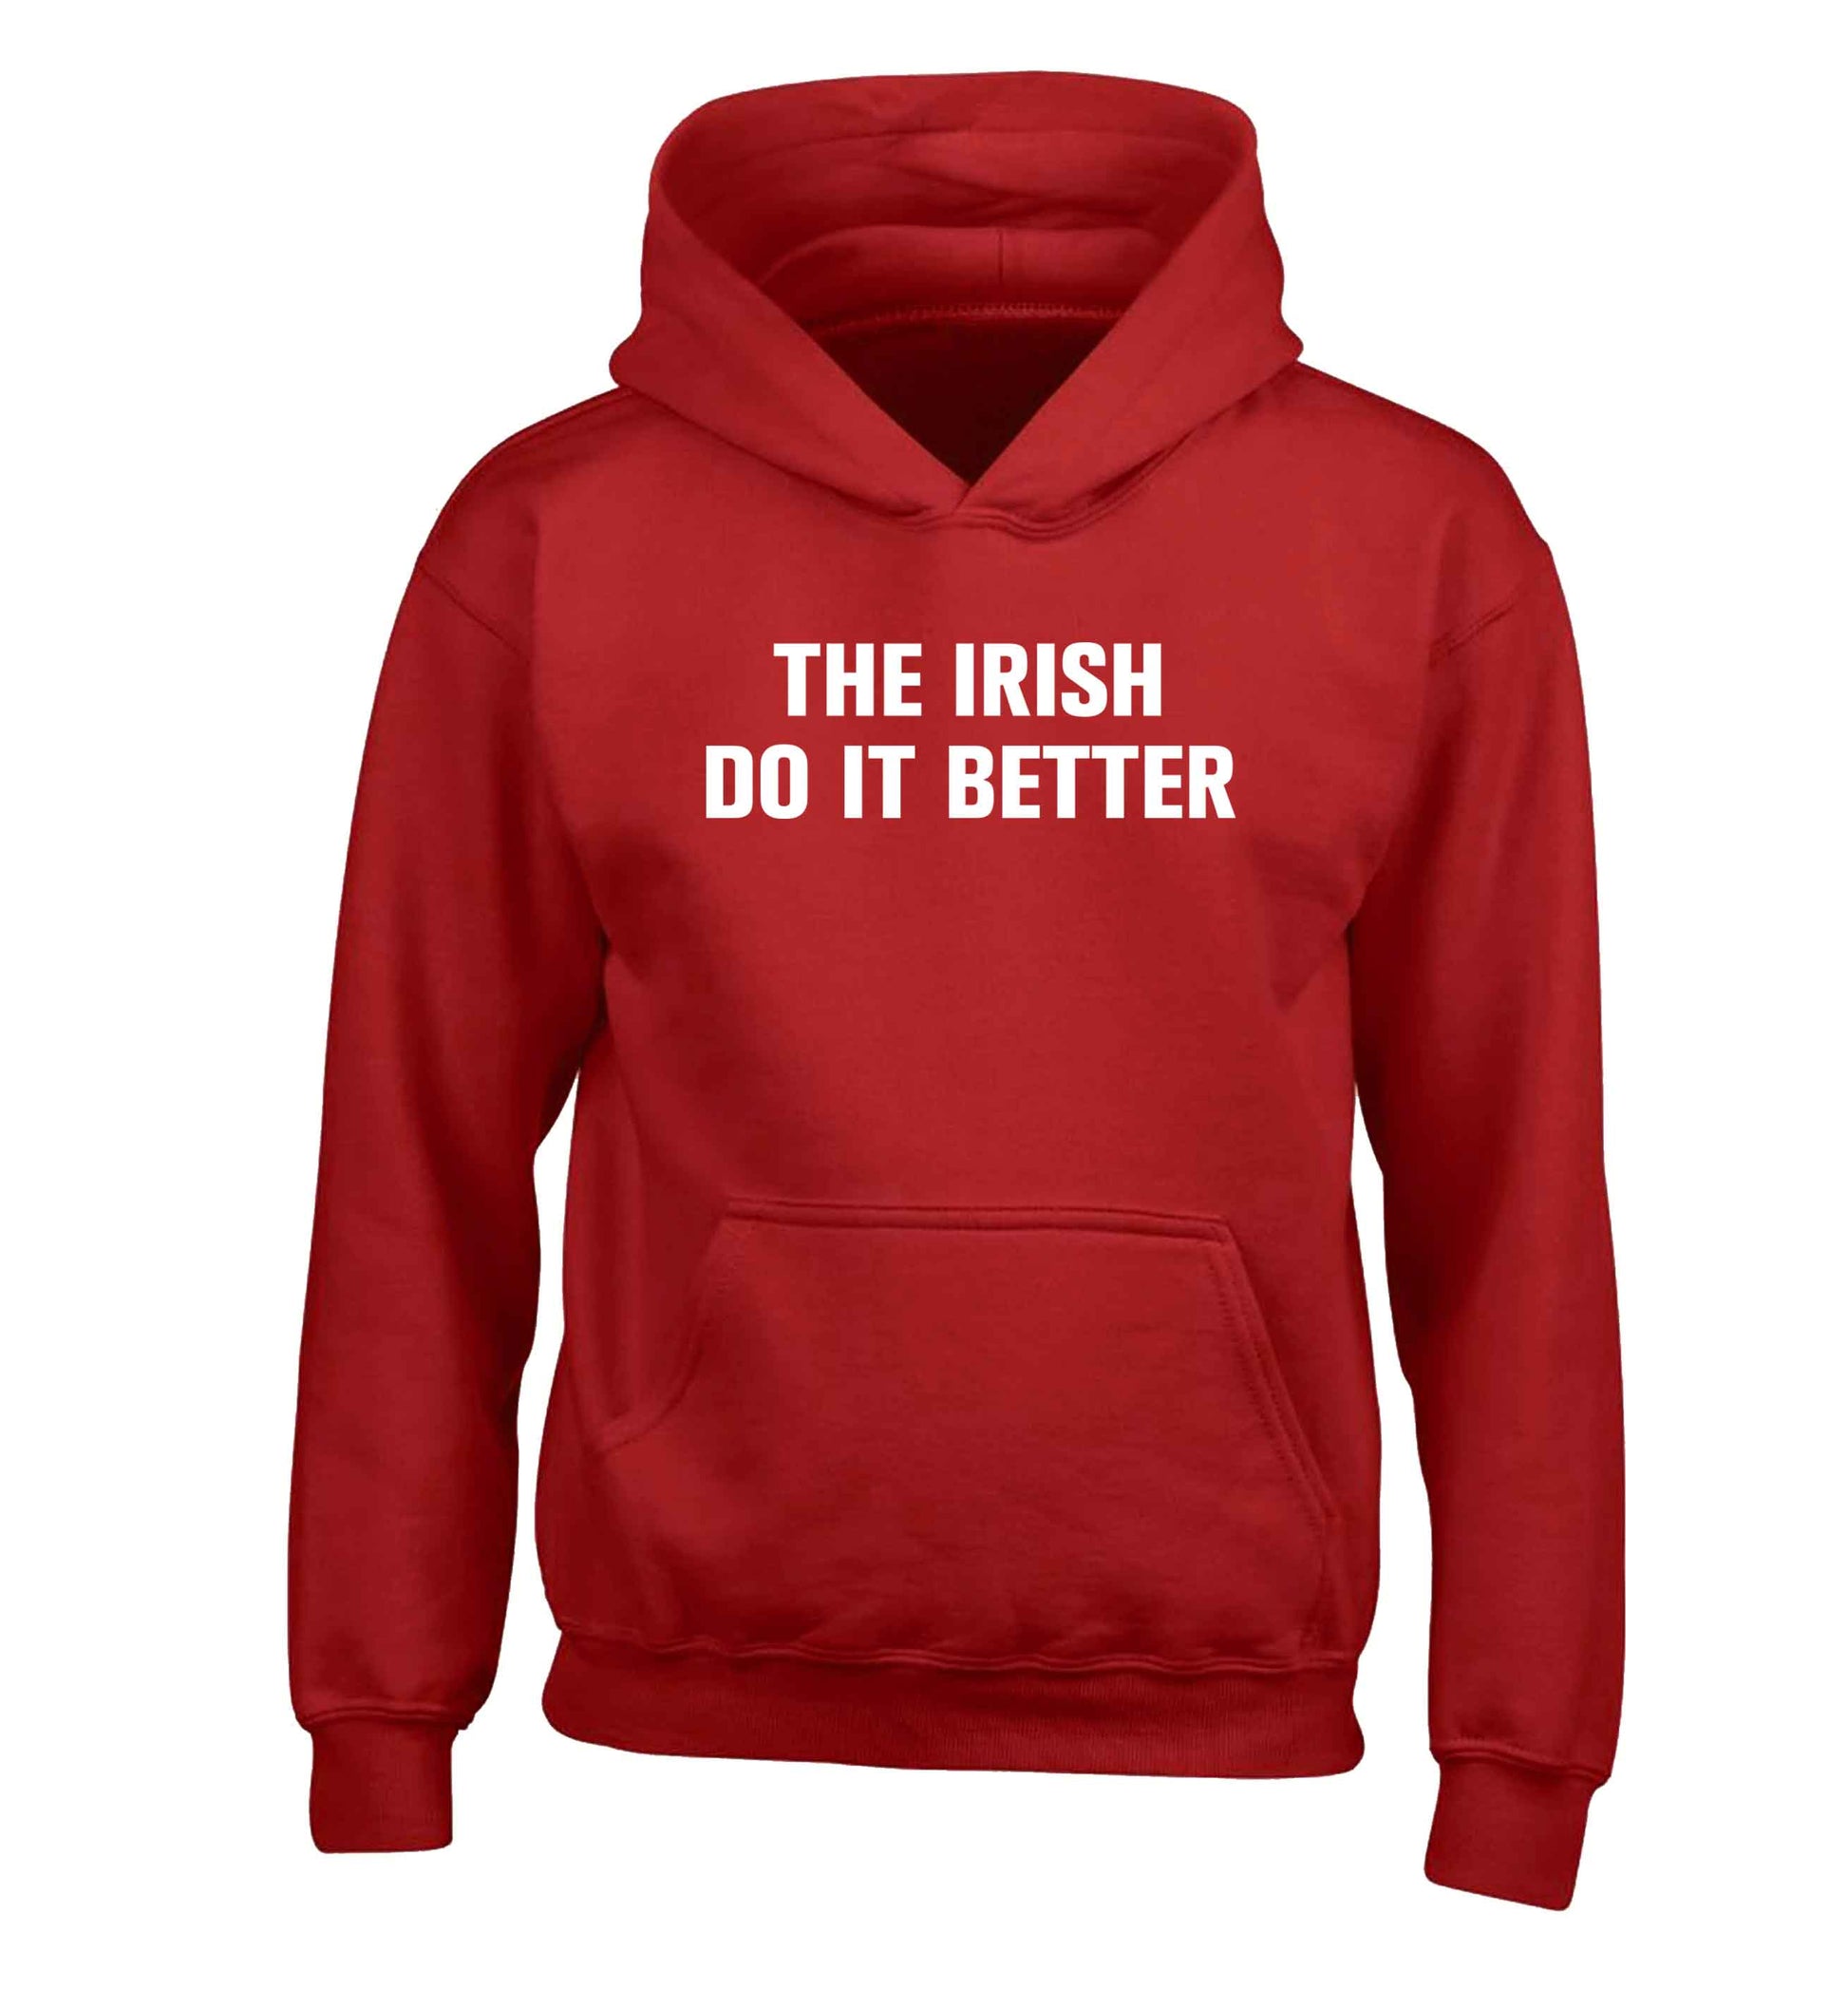 The Irish do it better children's red hoodie 12-13 Years